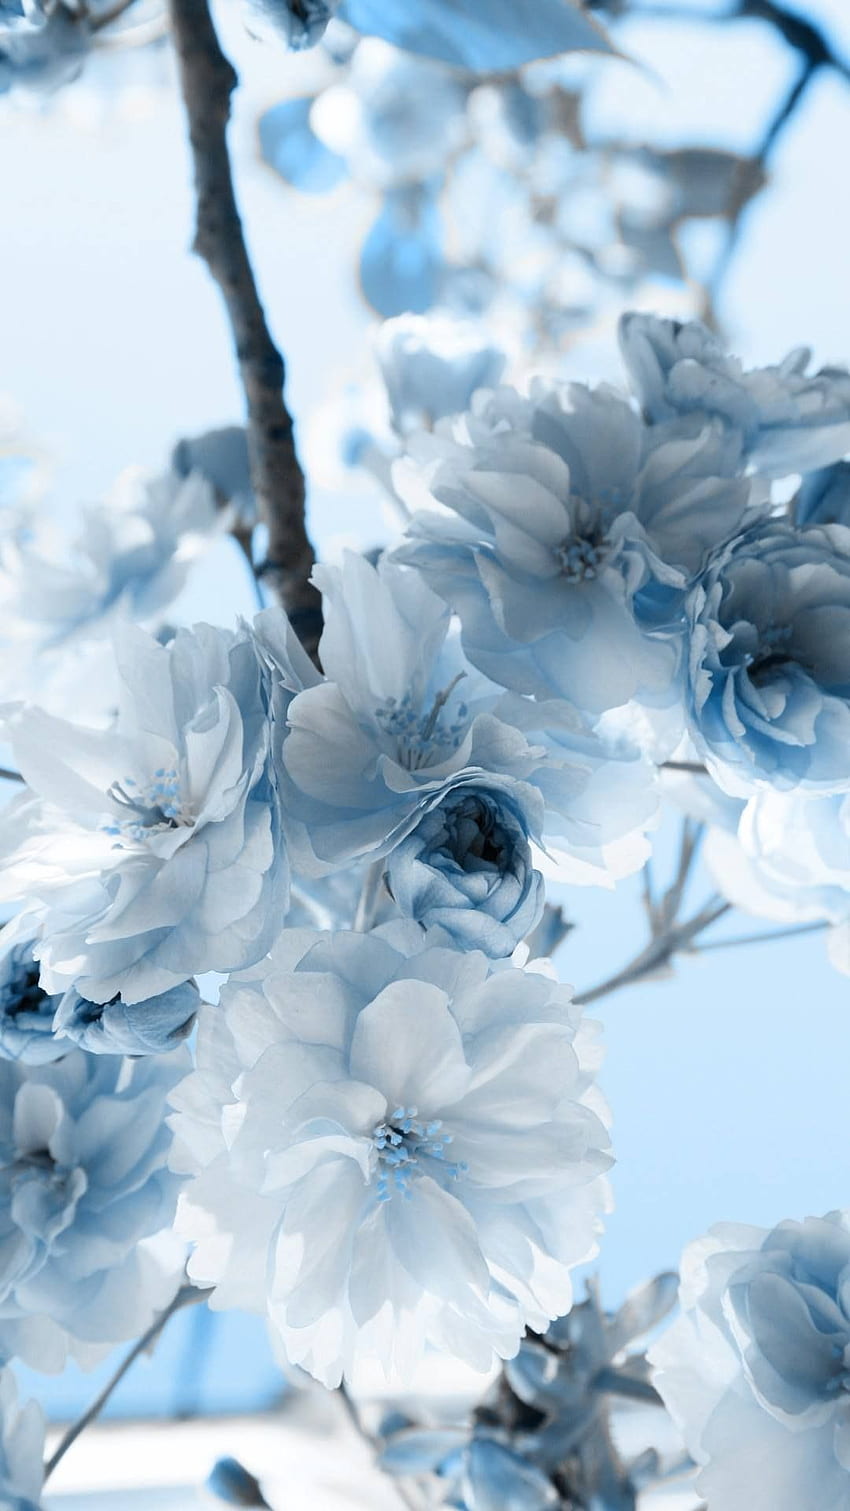 Light Floral Background Images  Free Download on Freepik